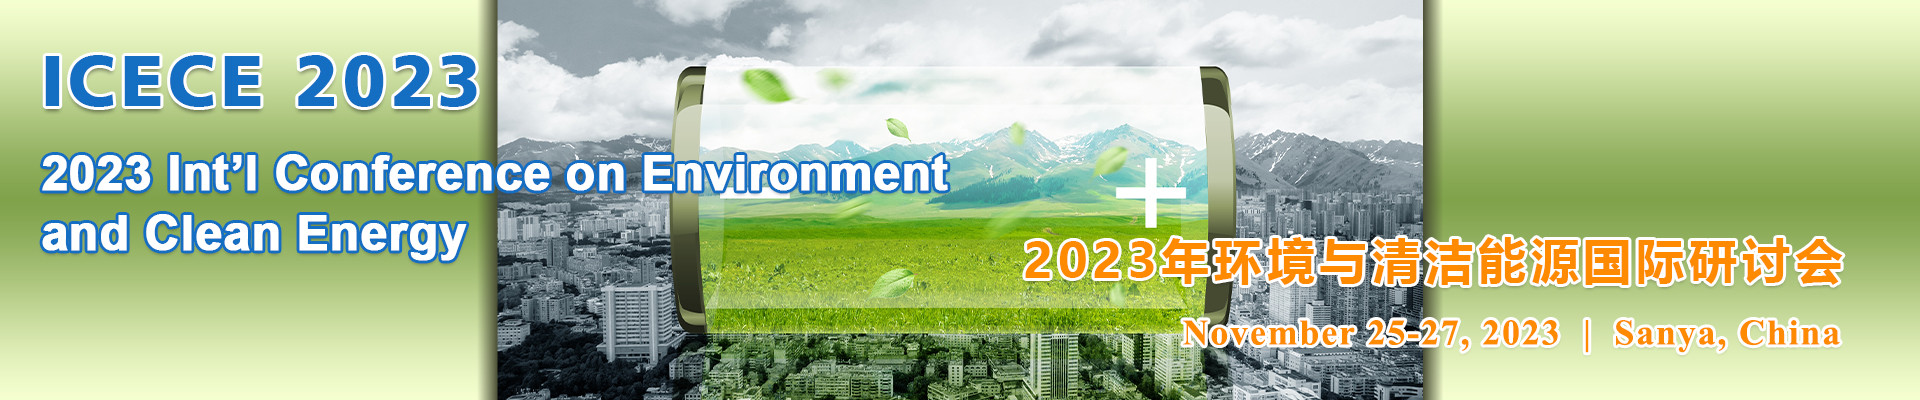 2023年环境与清洁能源国际研讨会 (ICECE 2023) 